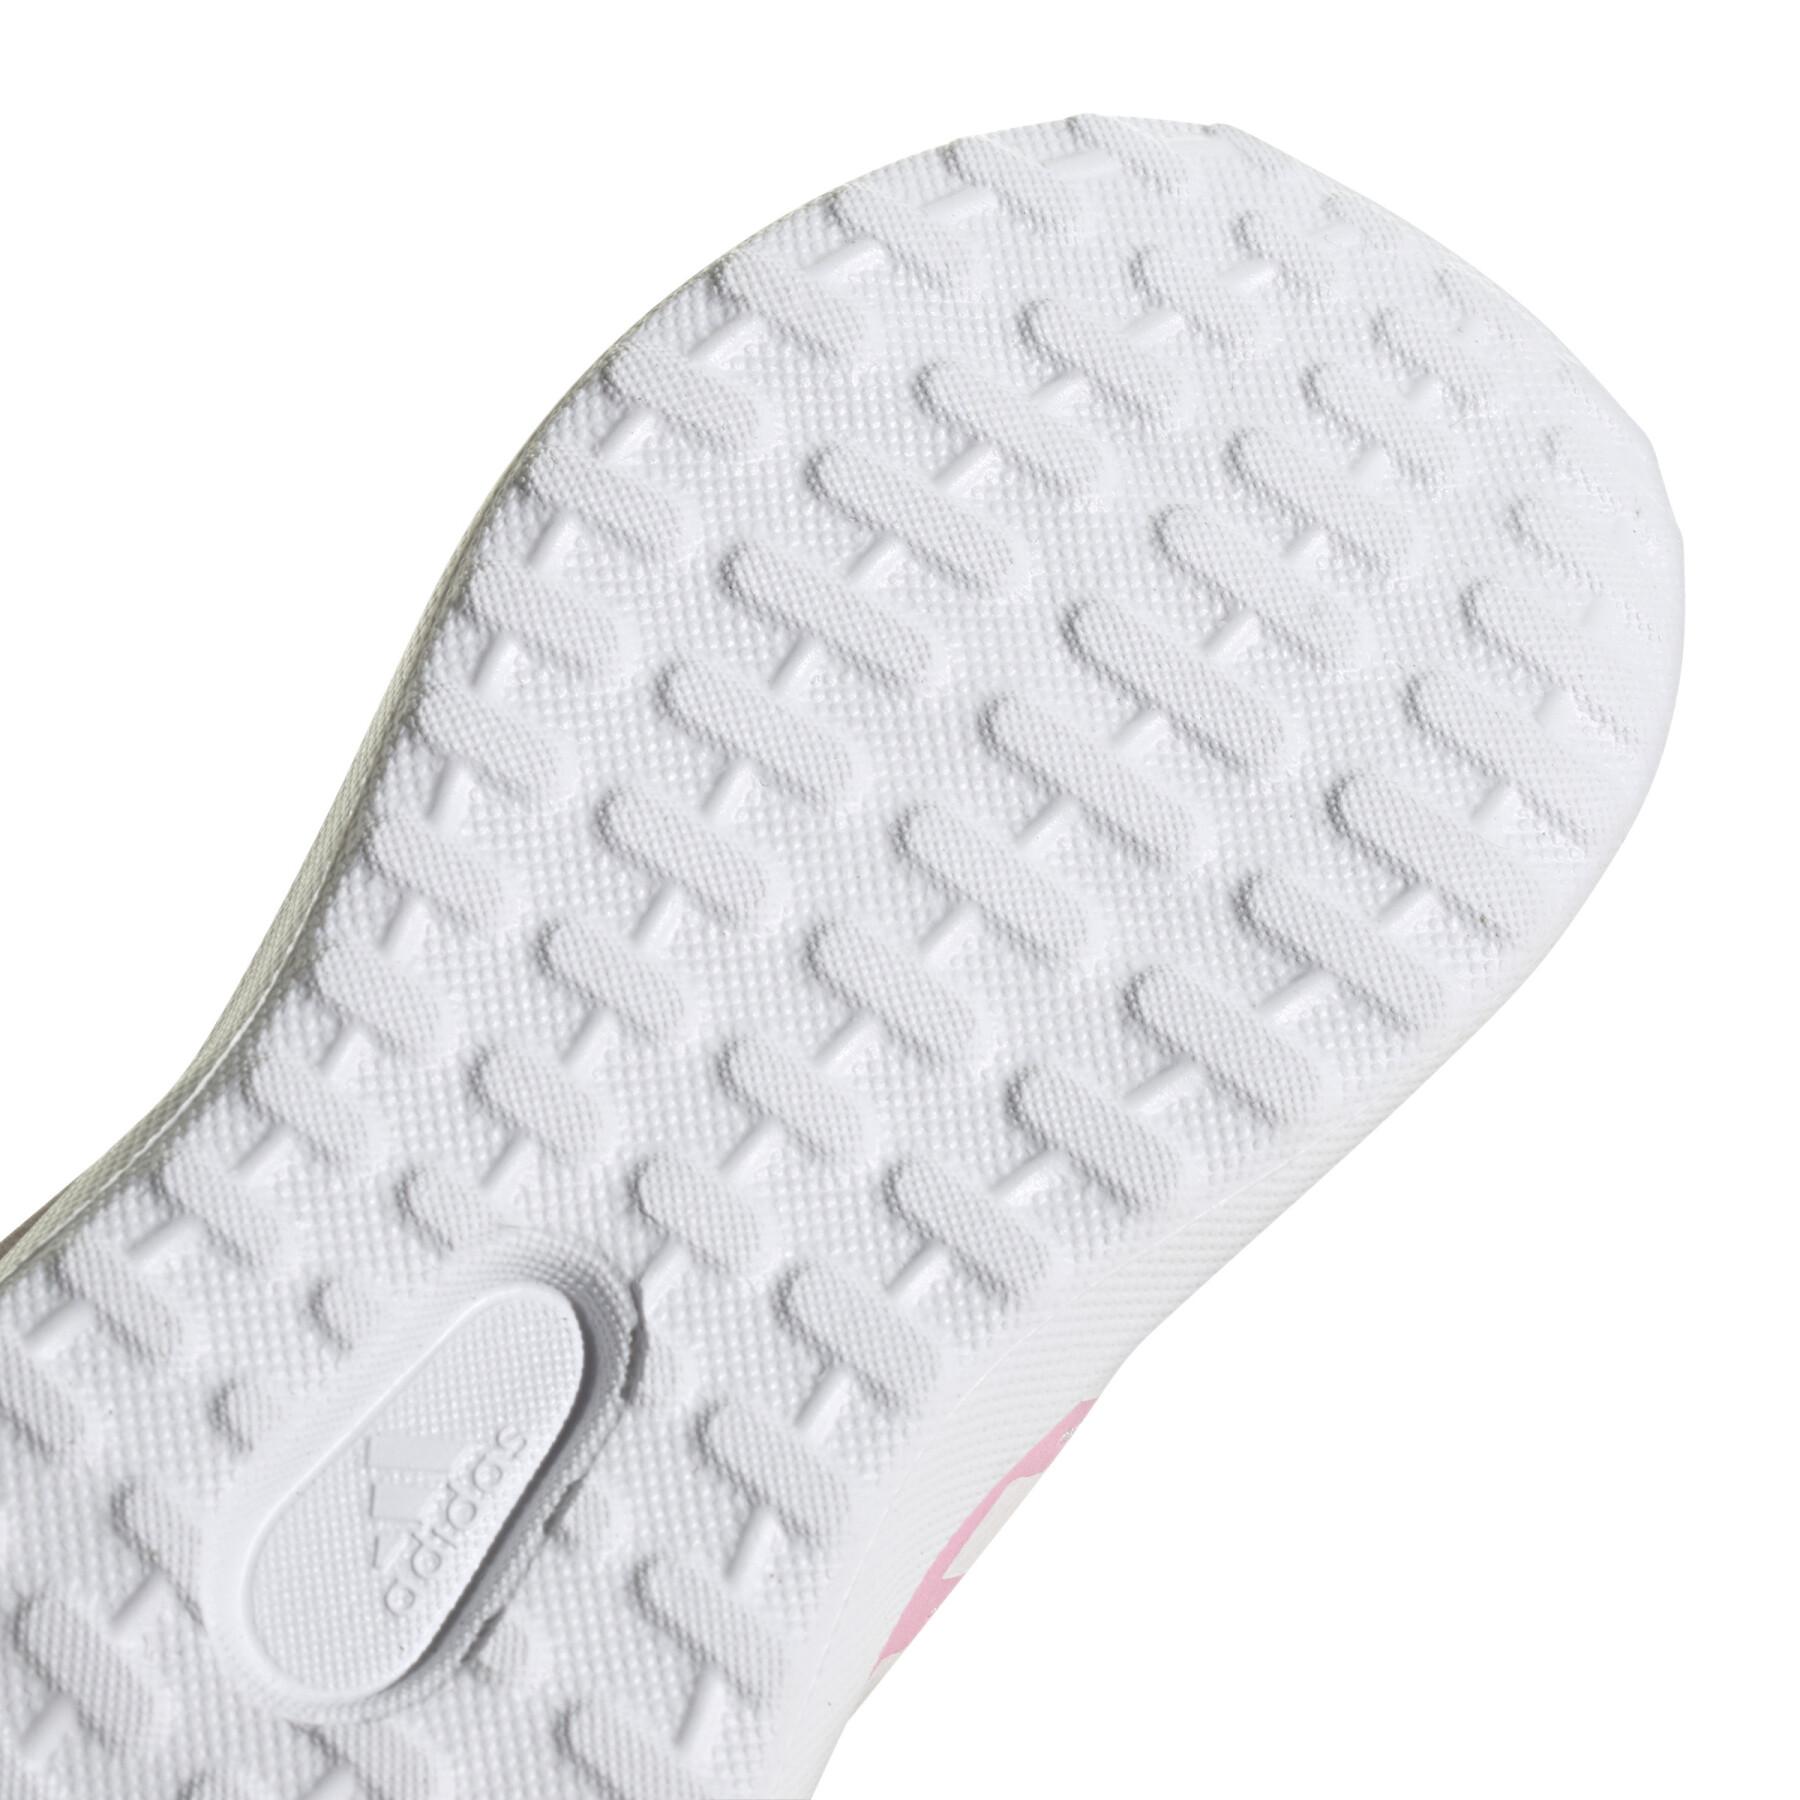 Schuhe von running Baby adidas Fortarun 2.0 Cloudfoam